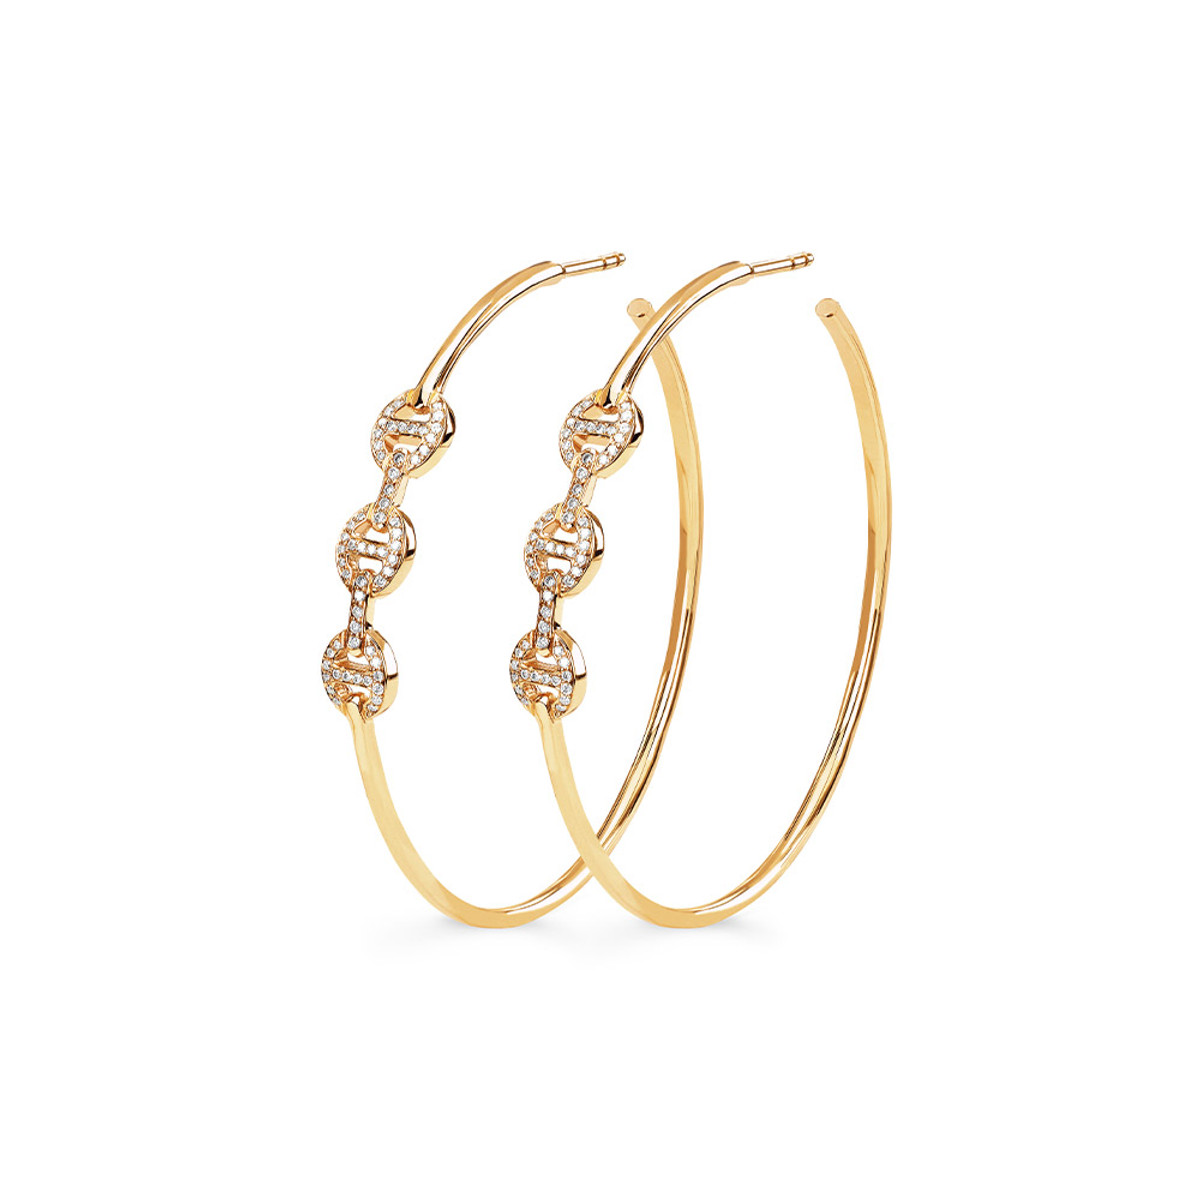 Hoorsenbuhs 18K Yellow Gold Diamond Hoop Earrings-57472 Product Image